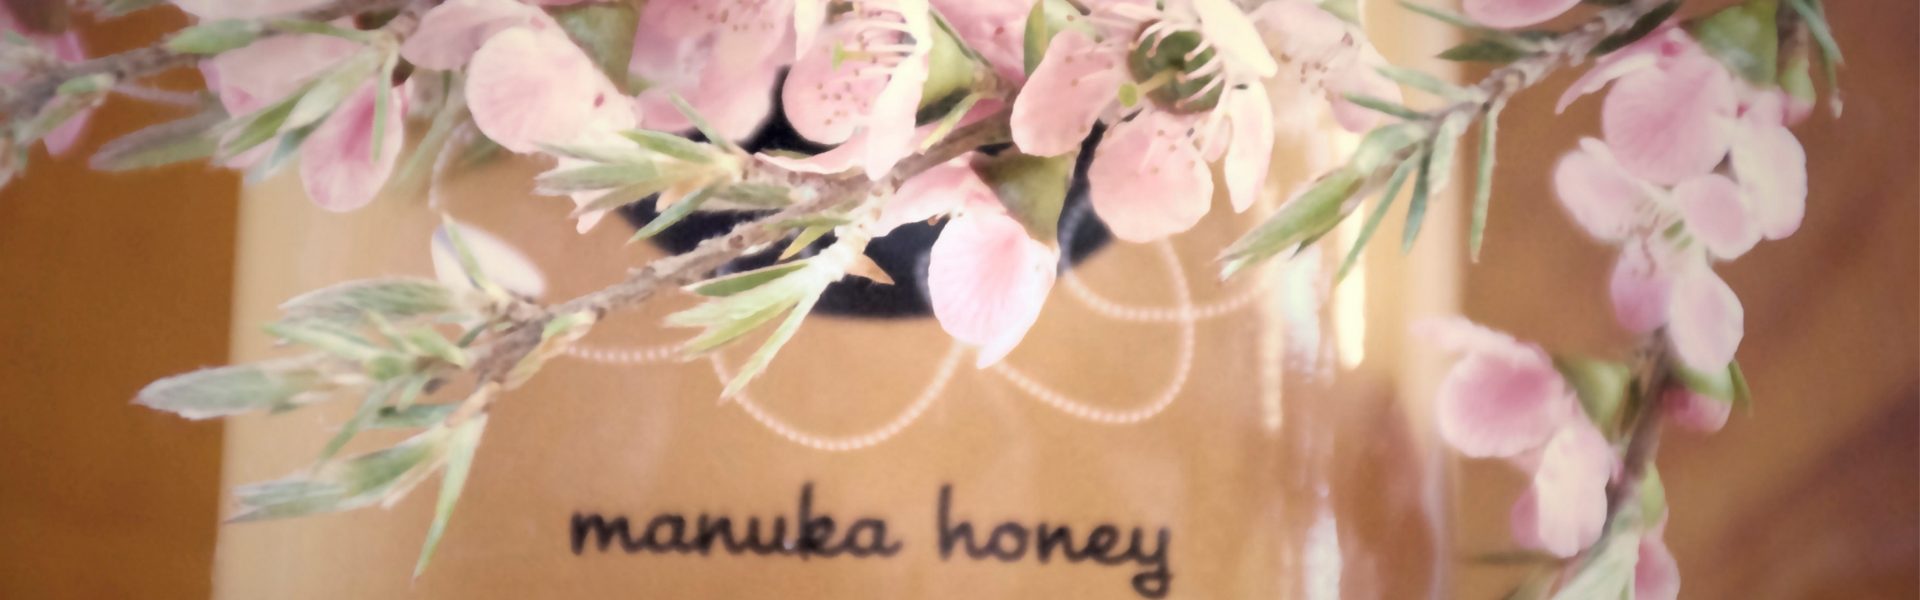 Manawa Manuka Honey